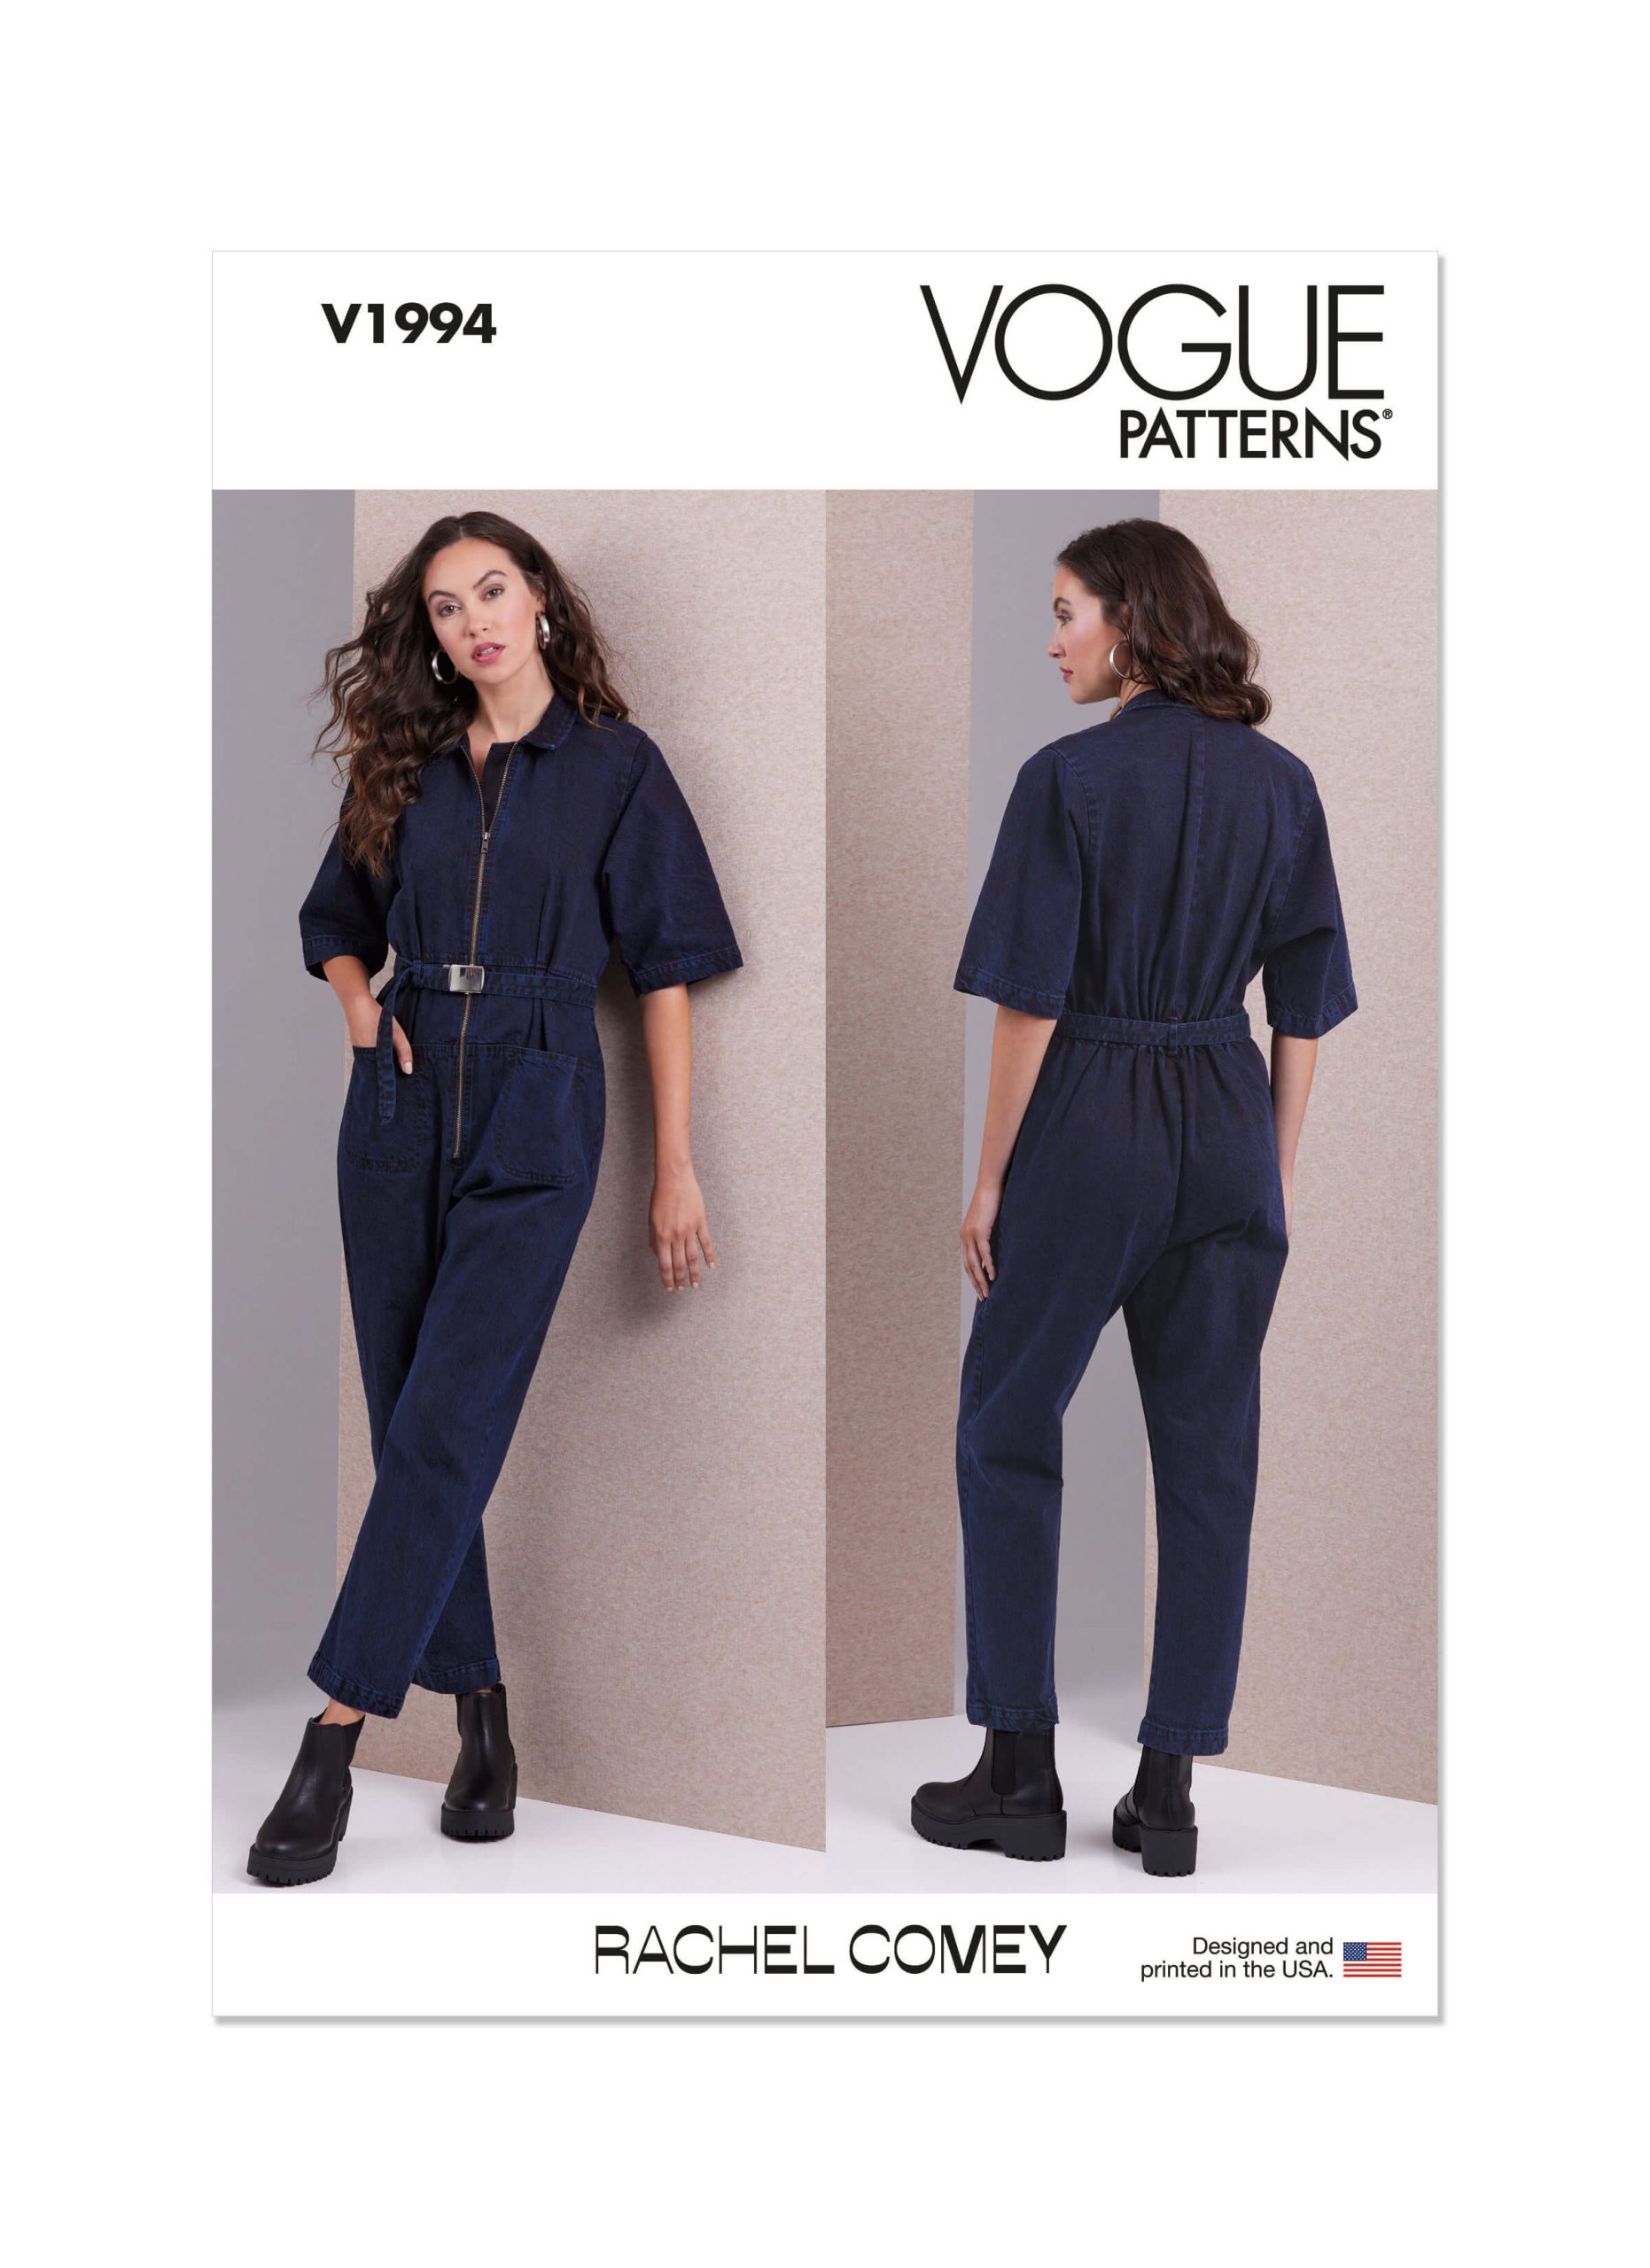 Vogue Patterns V1994 Misses' Jumpsuit by Rachel Comey